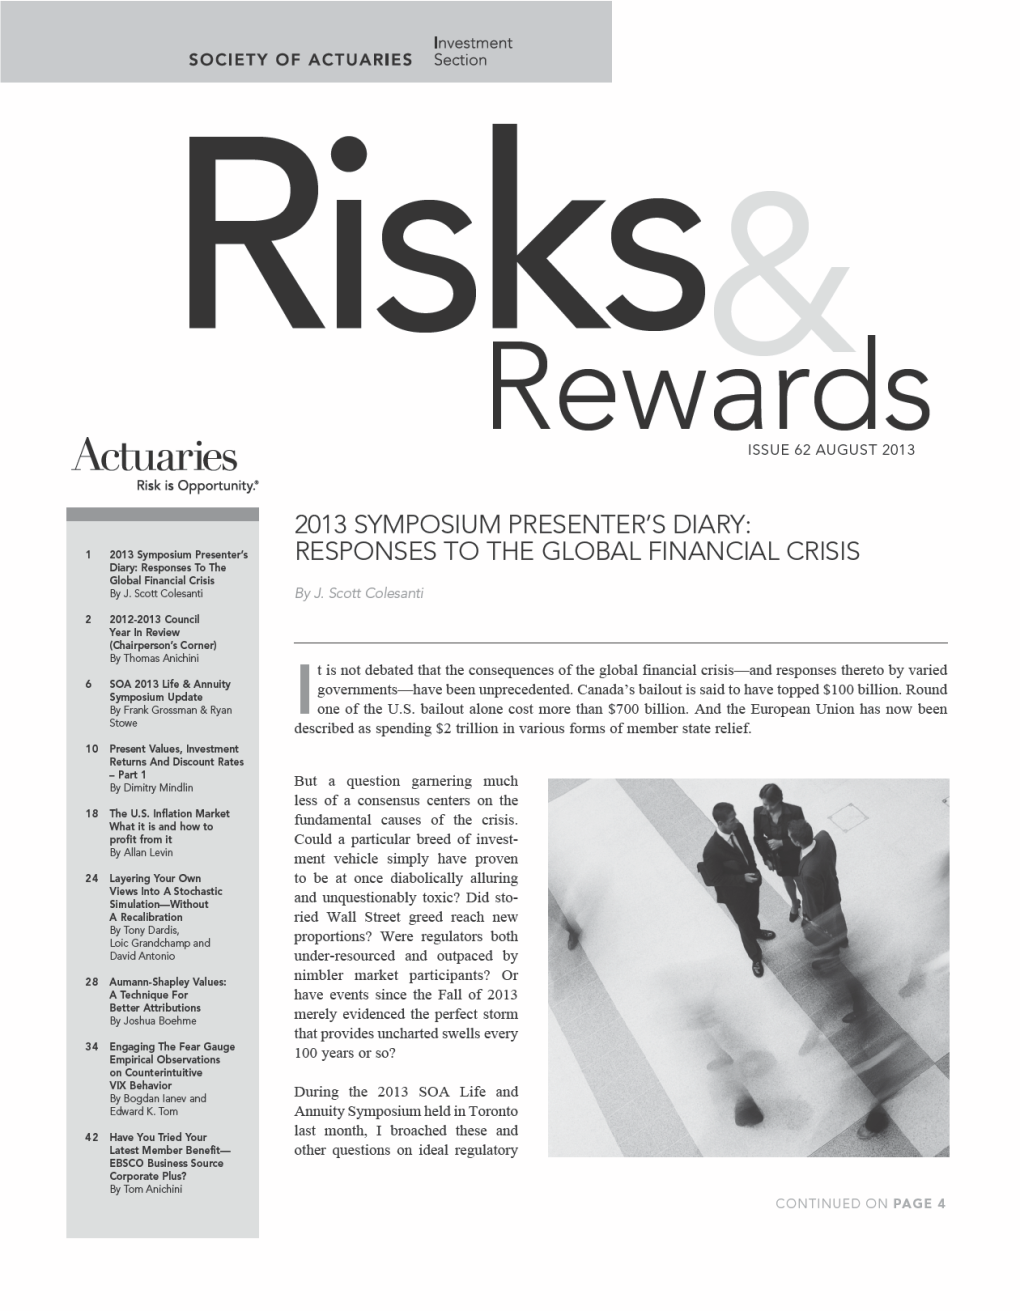 Risks & Rewards Issue 62 August 2013